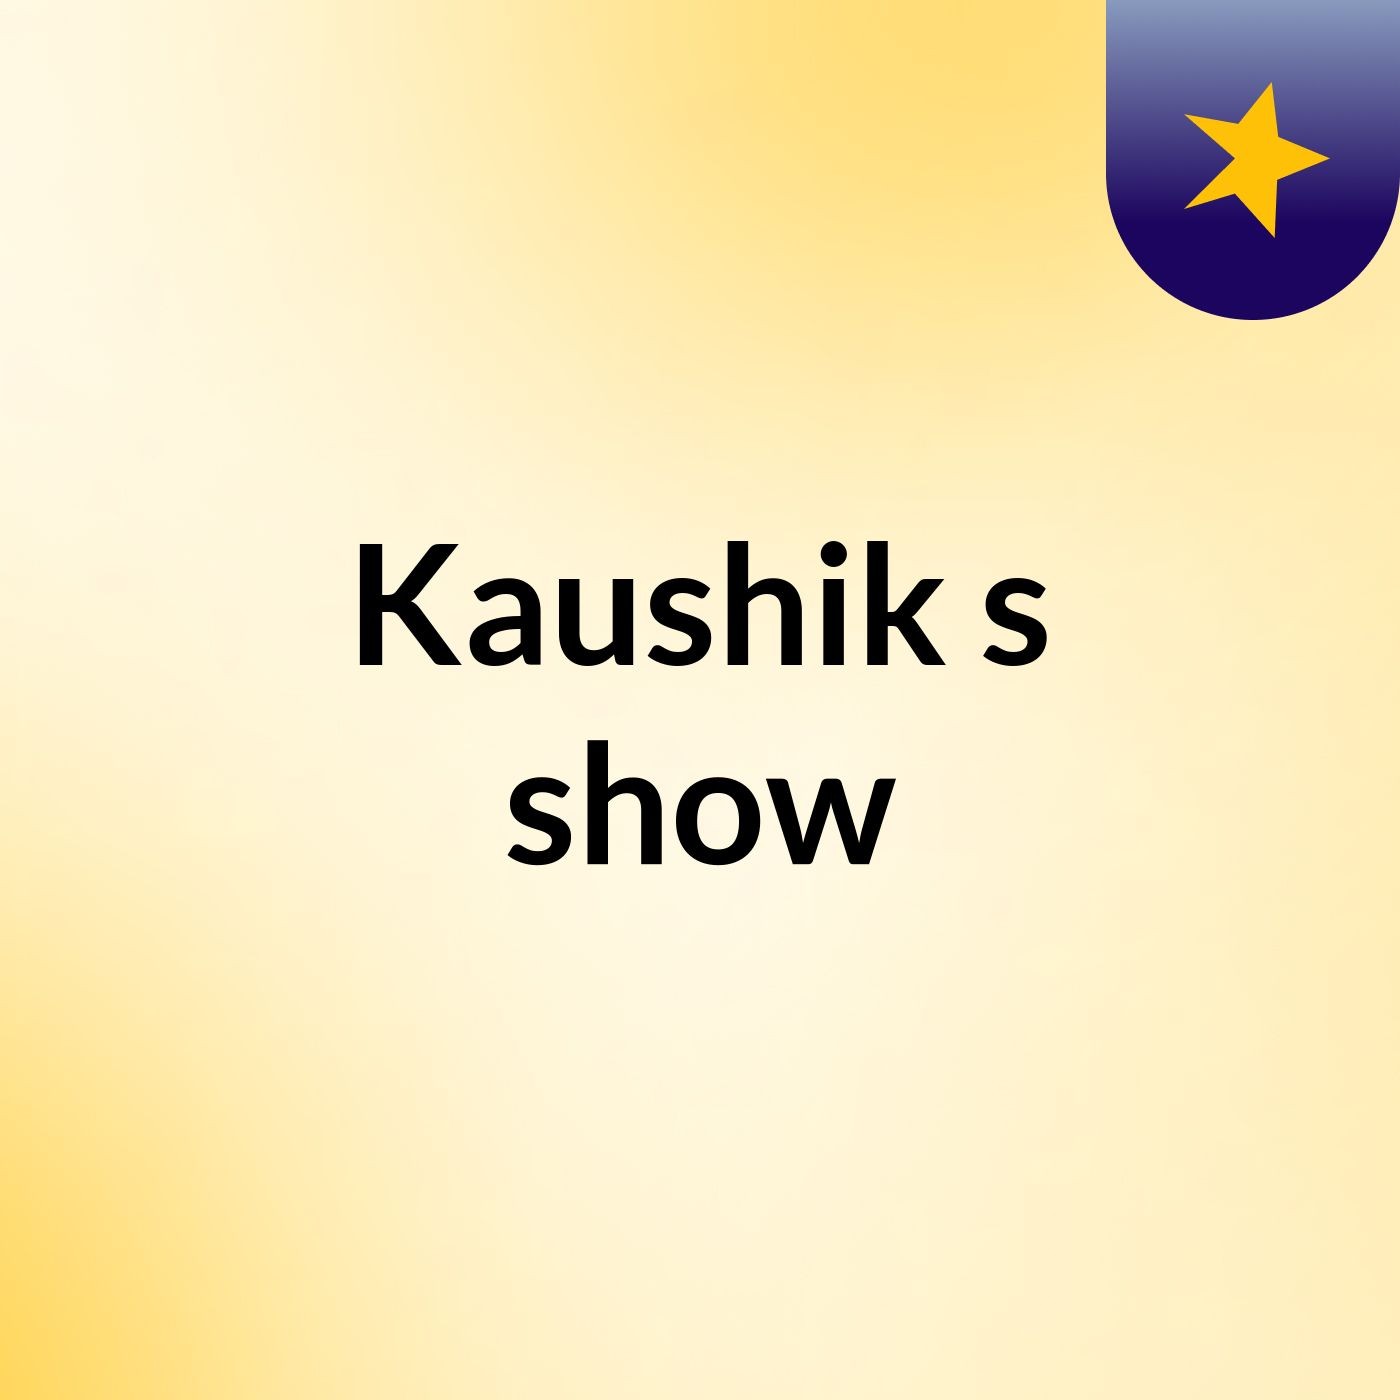 Kaushik's show